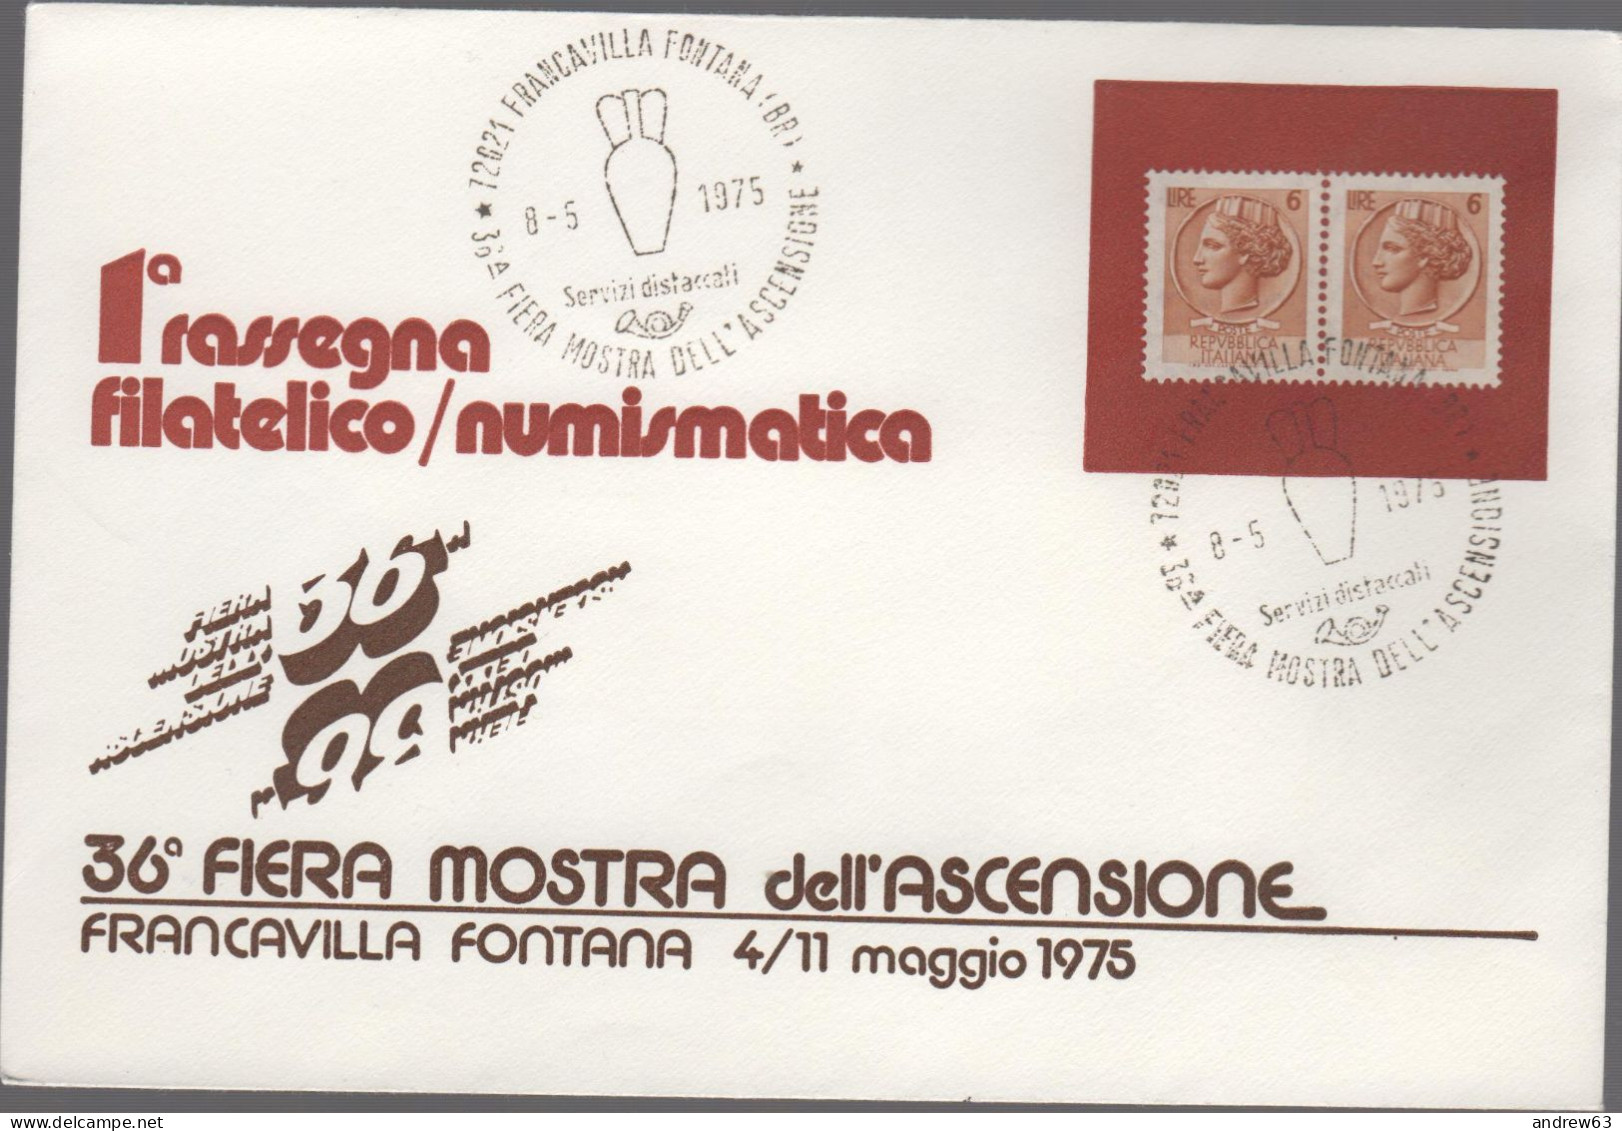 ITALIA - ITALIE - ITALY - 1975 - 2x 6 Siracusana + Annullo 36a Fiera Dell'Ascensione - 1a Rassegna Filatelico/Numismatic - Philatelic Exhibitions